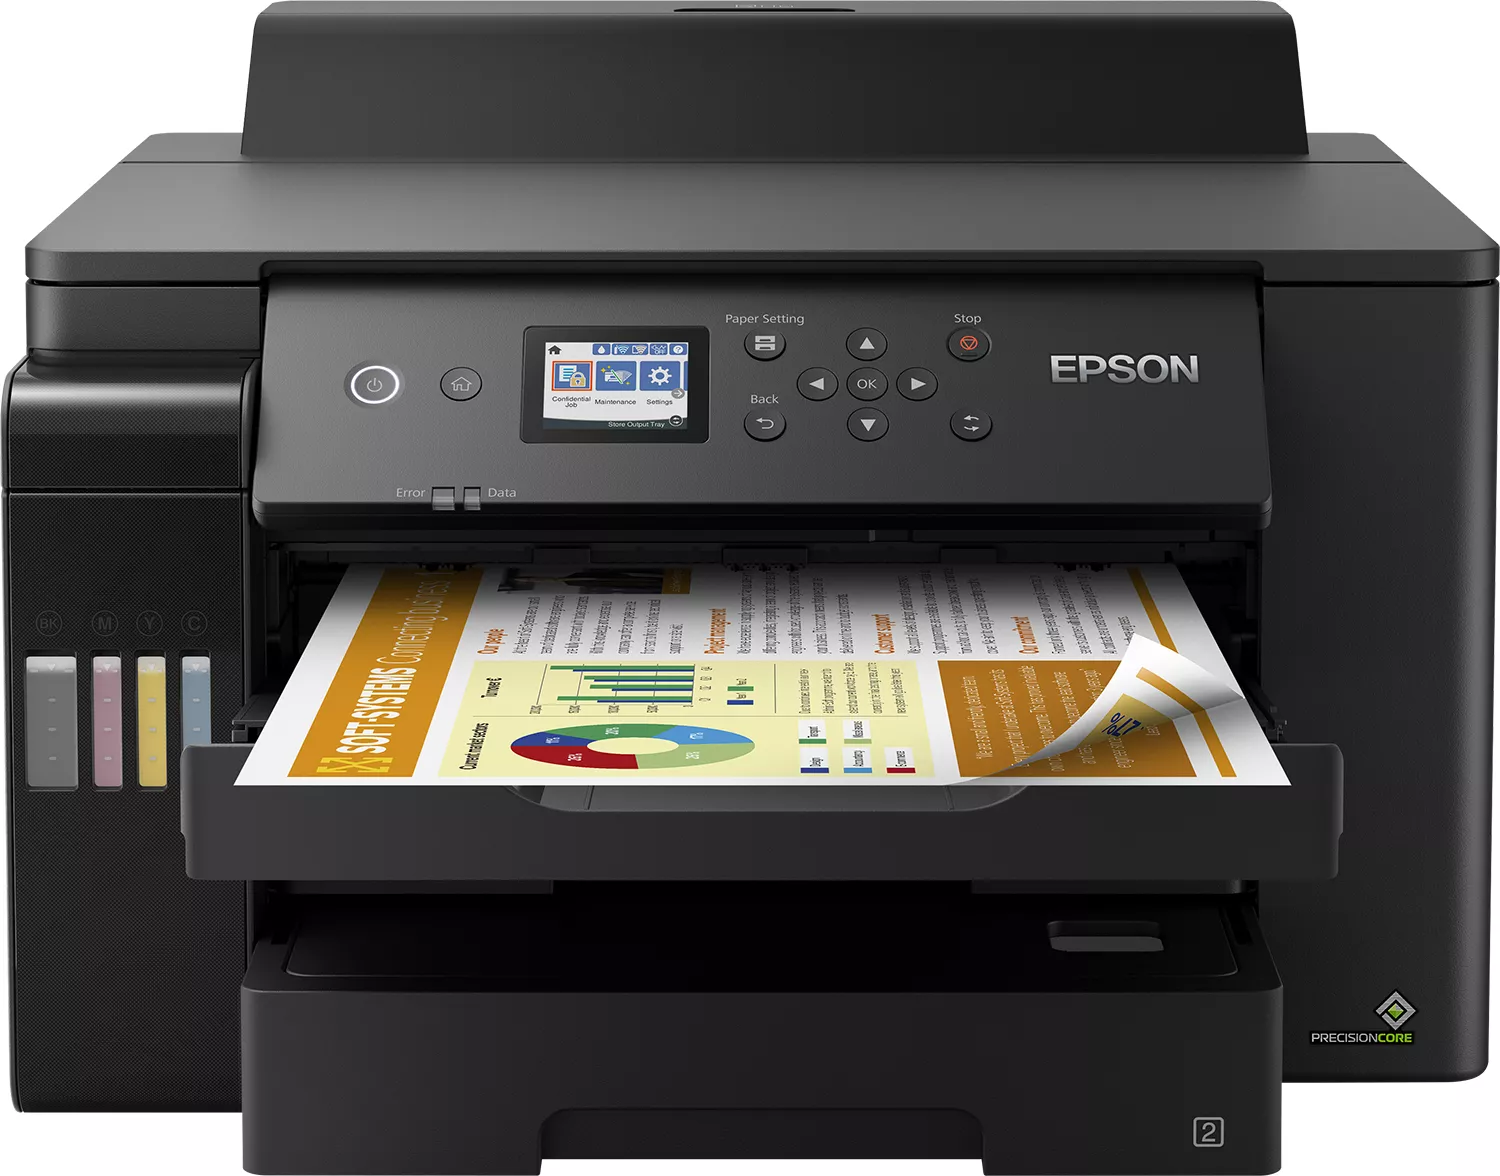 Vente EPSON EcoTank ET-16150 Printer colour Duplex ink-jet A3 au meilleur prix